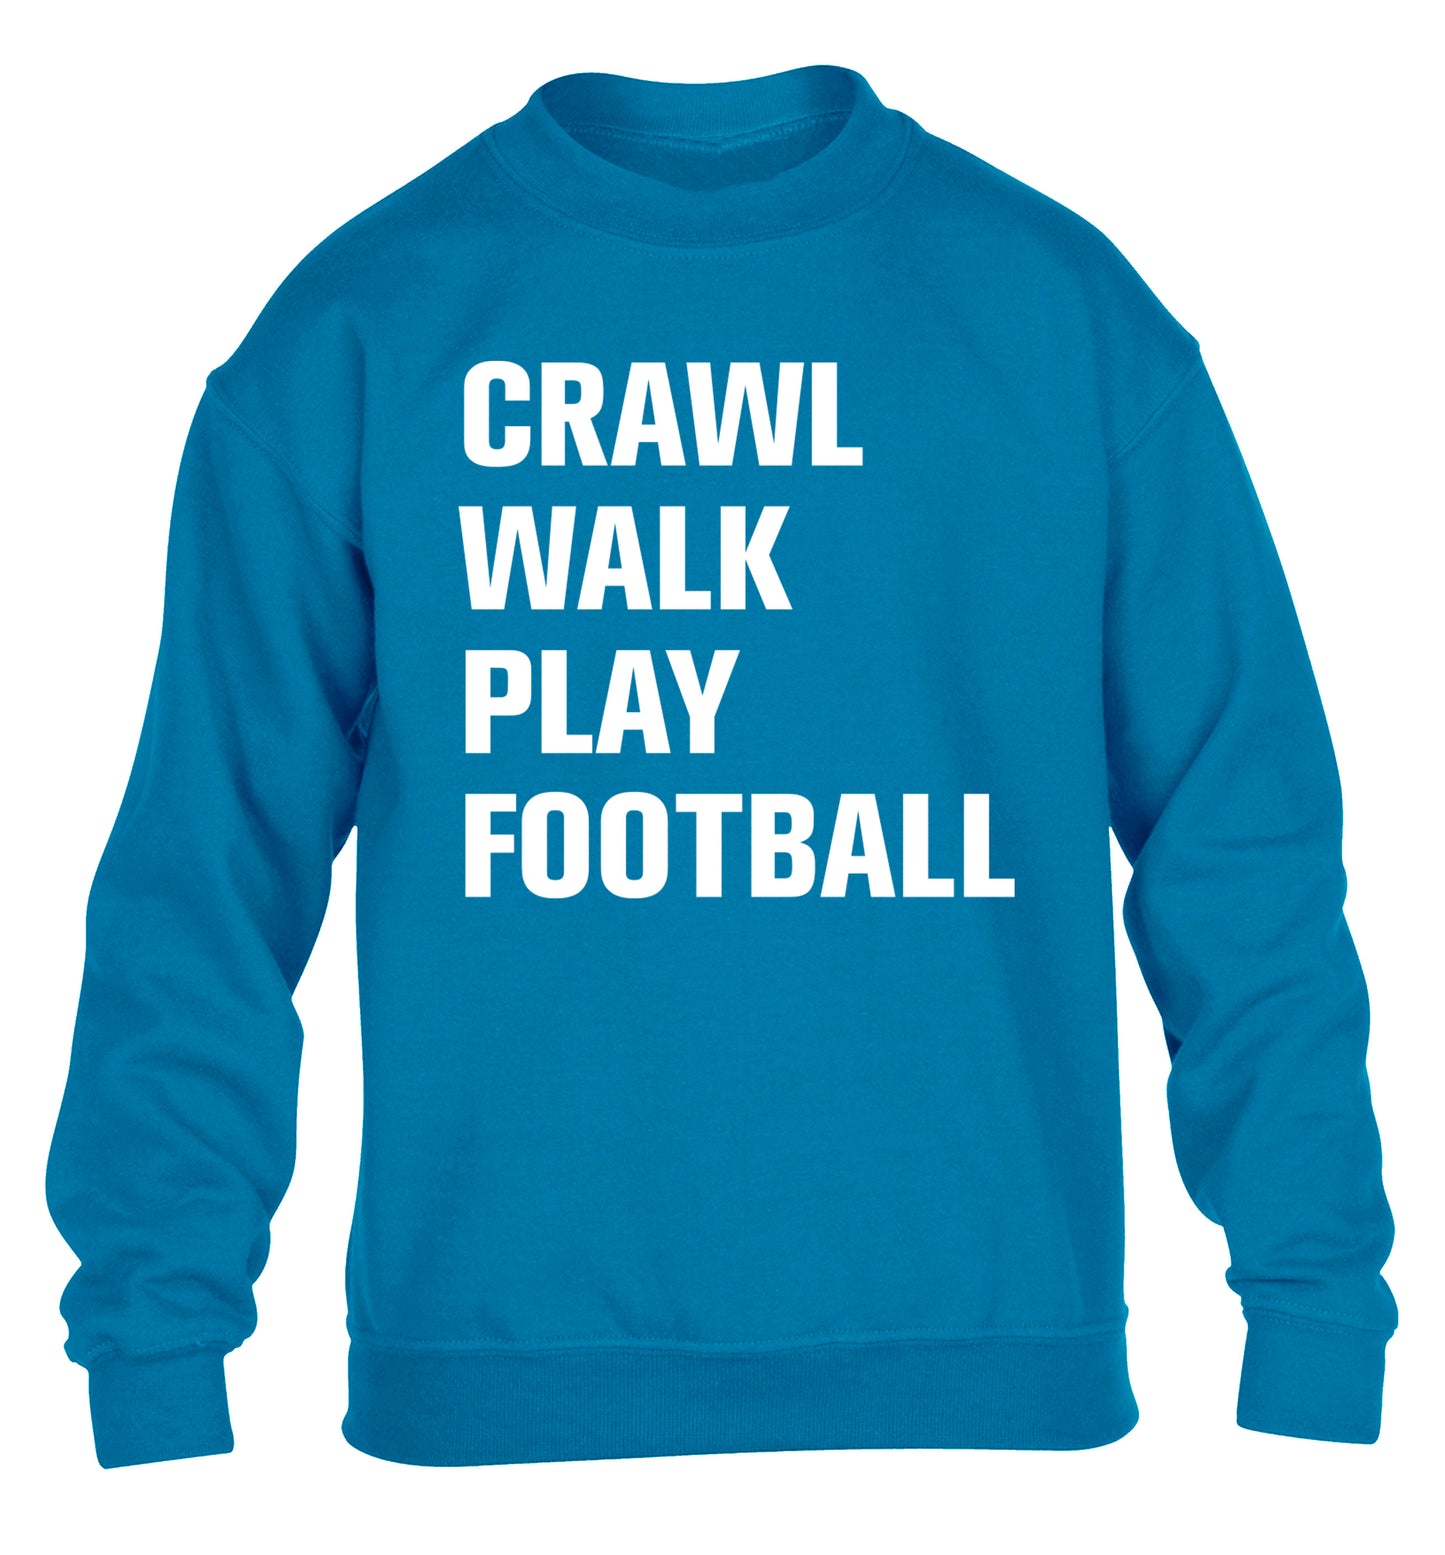 Crawl, walk, play football children's blue sweater 12-13 Years